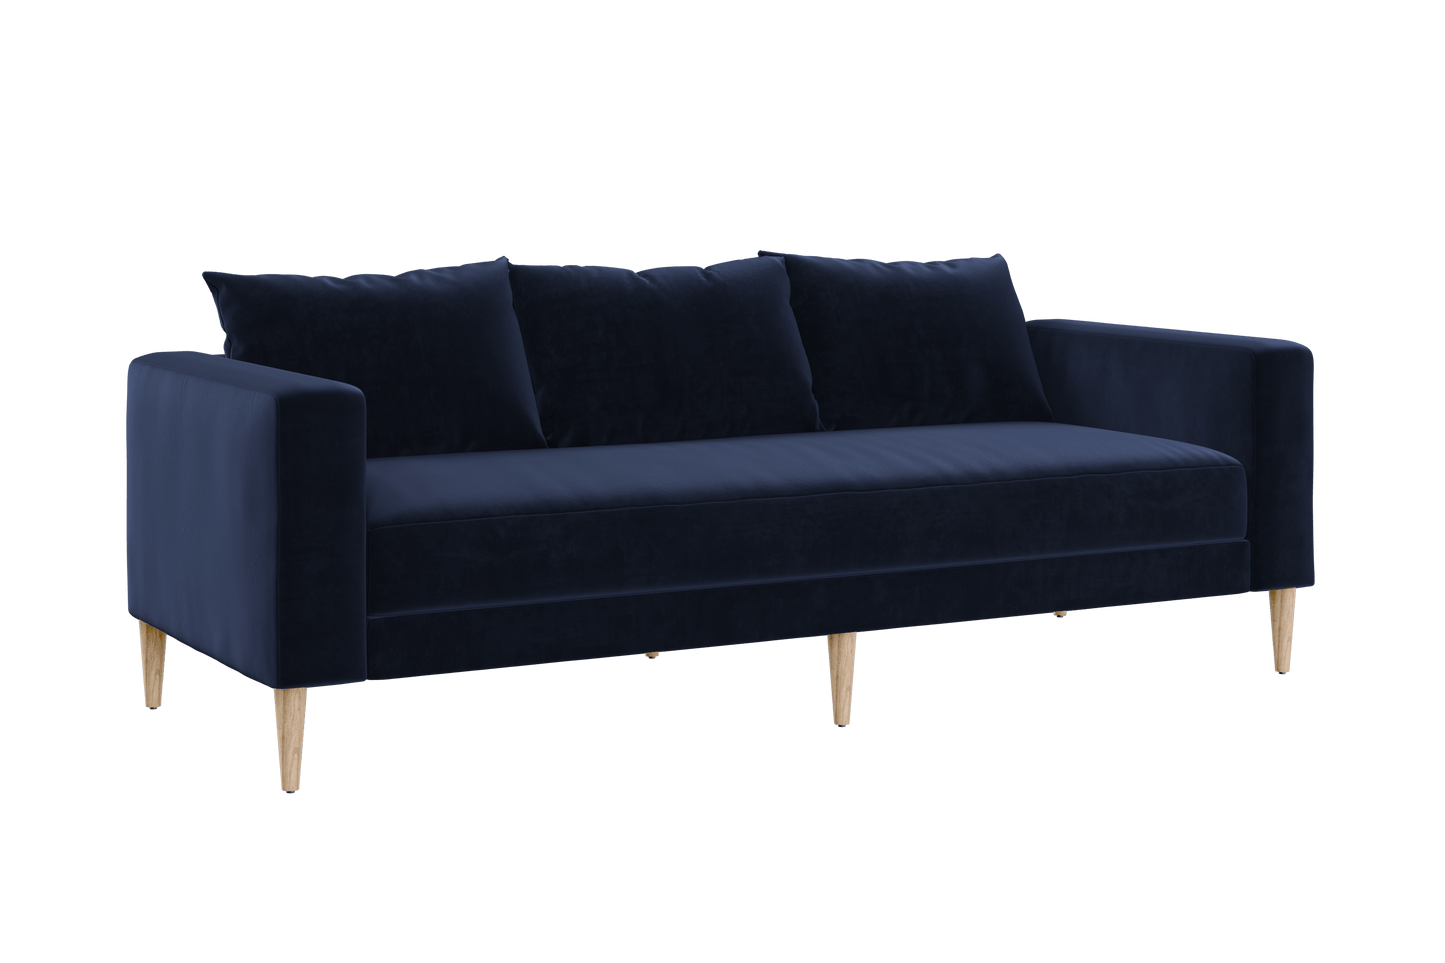 The Essential Sofa Sofa